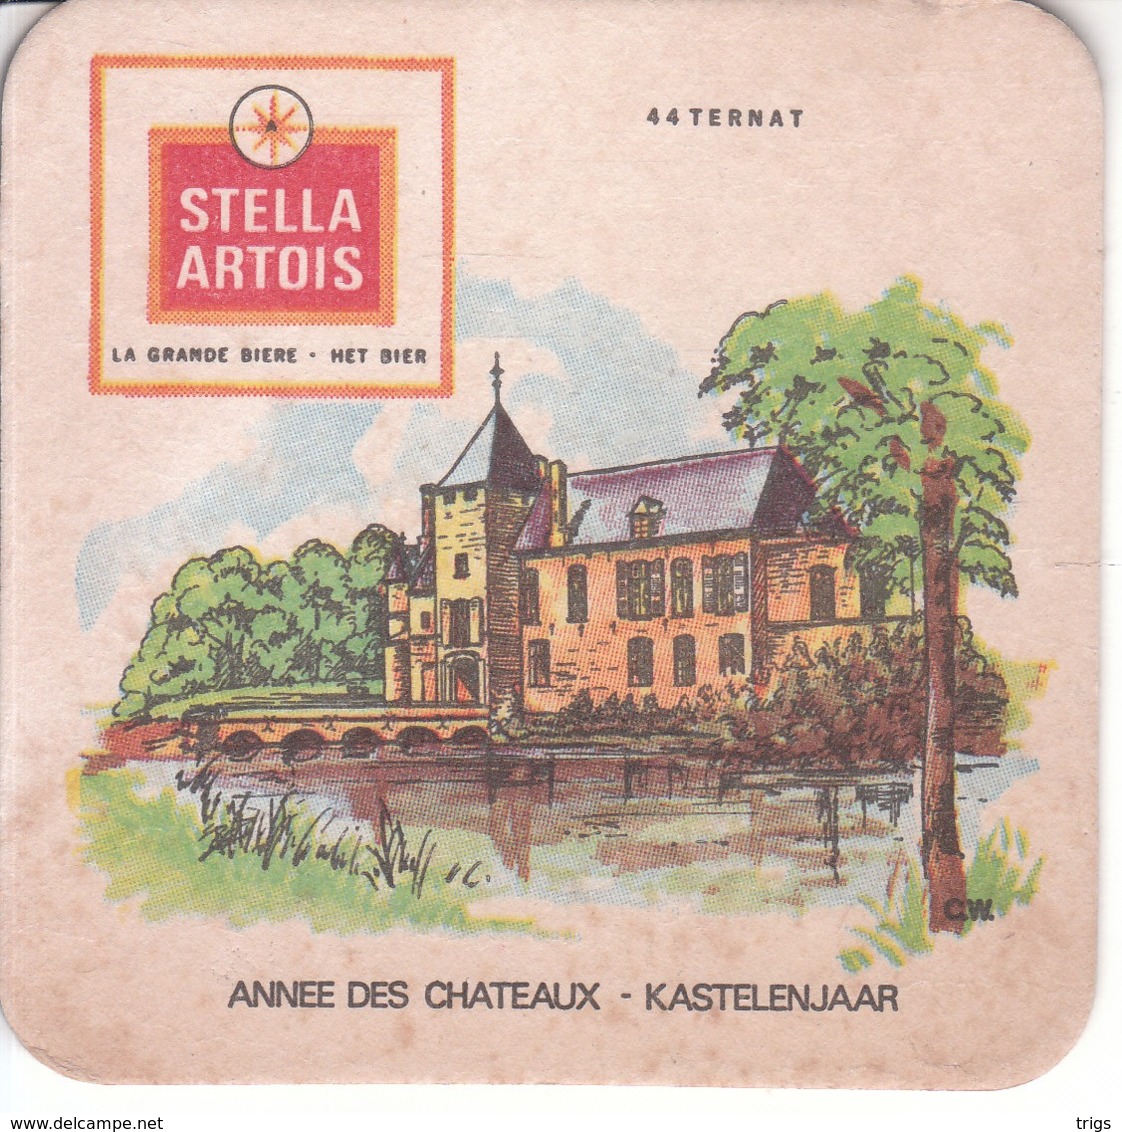 Stella Artois - Sous-bocks